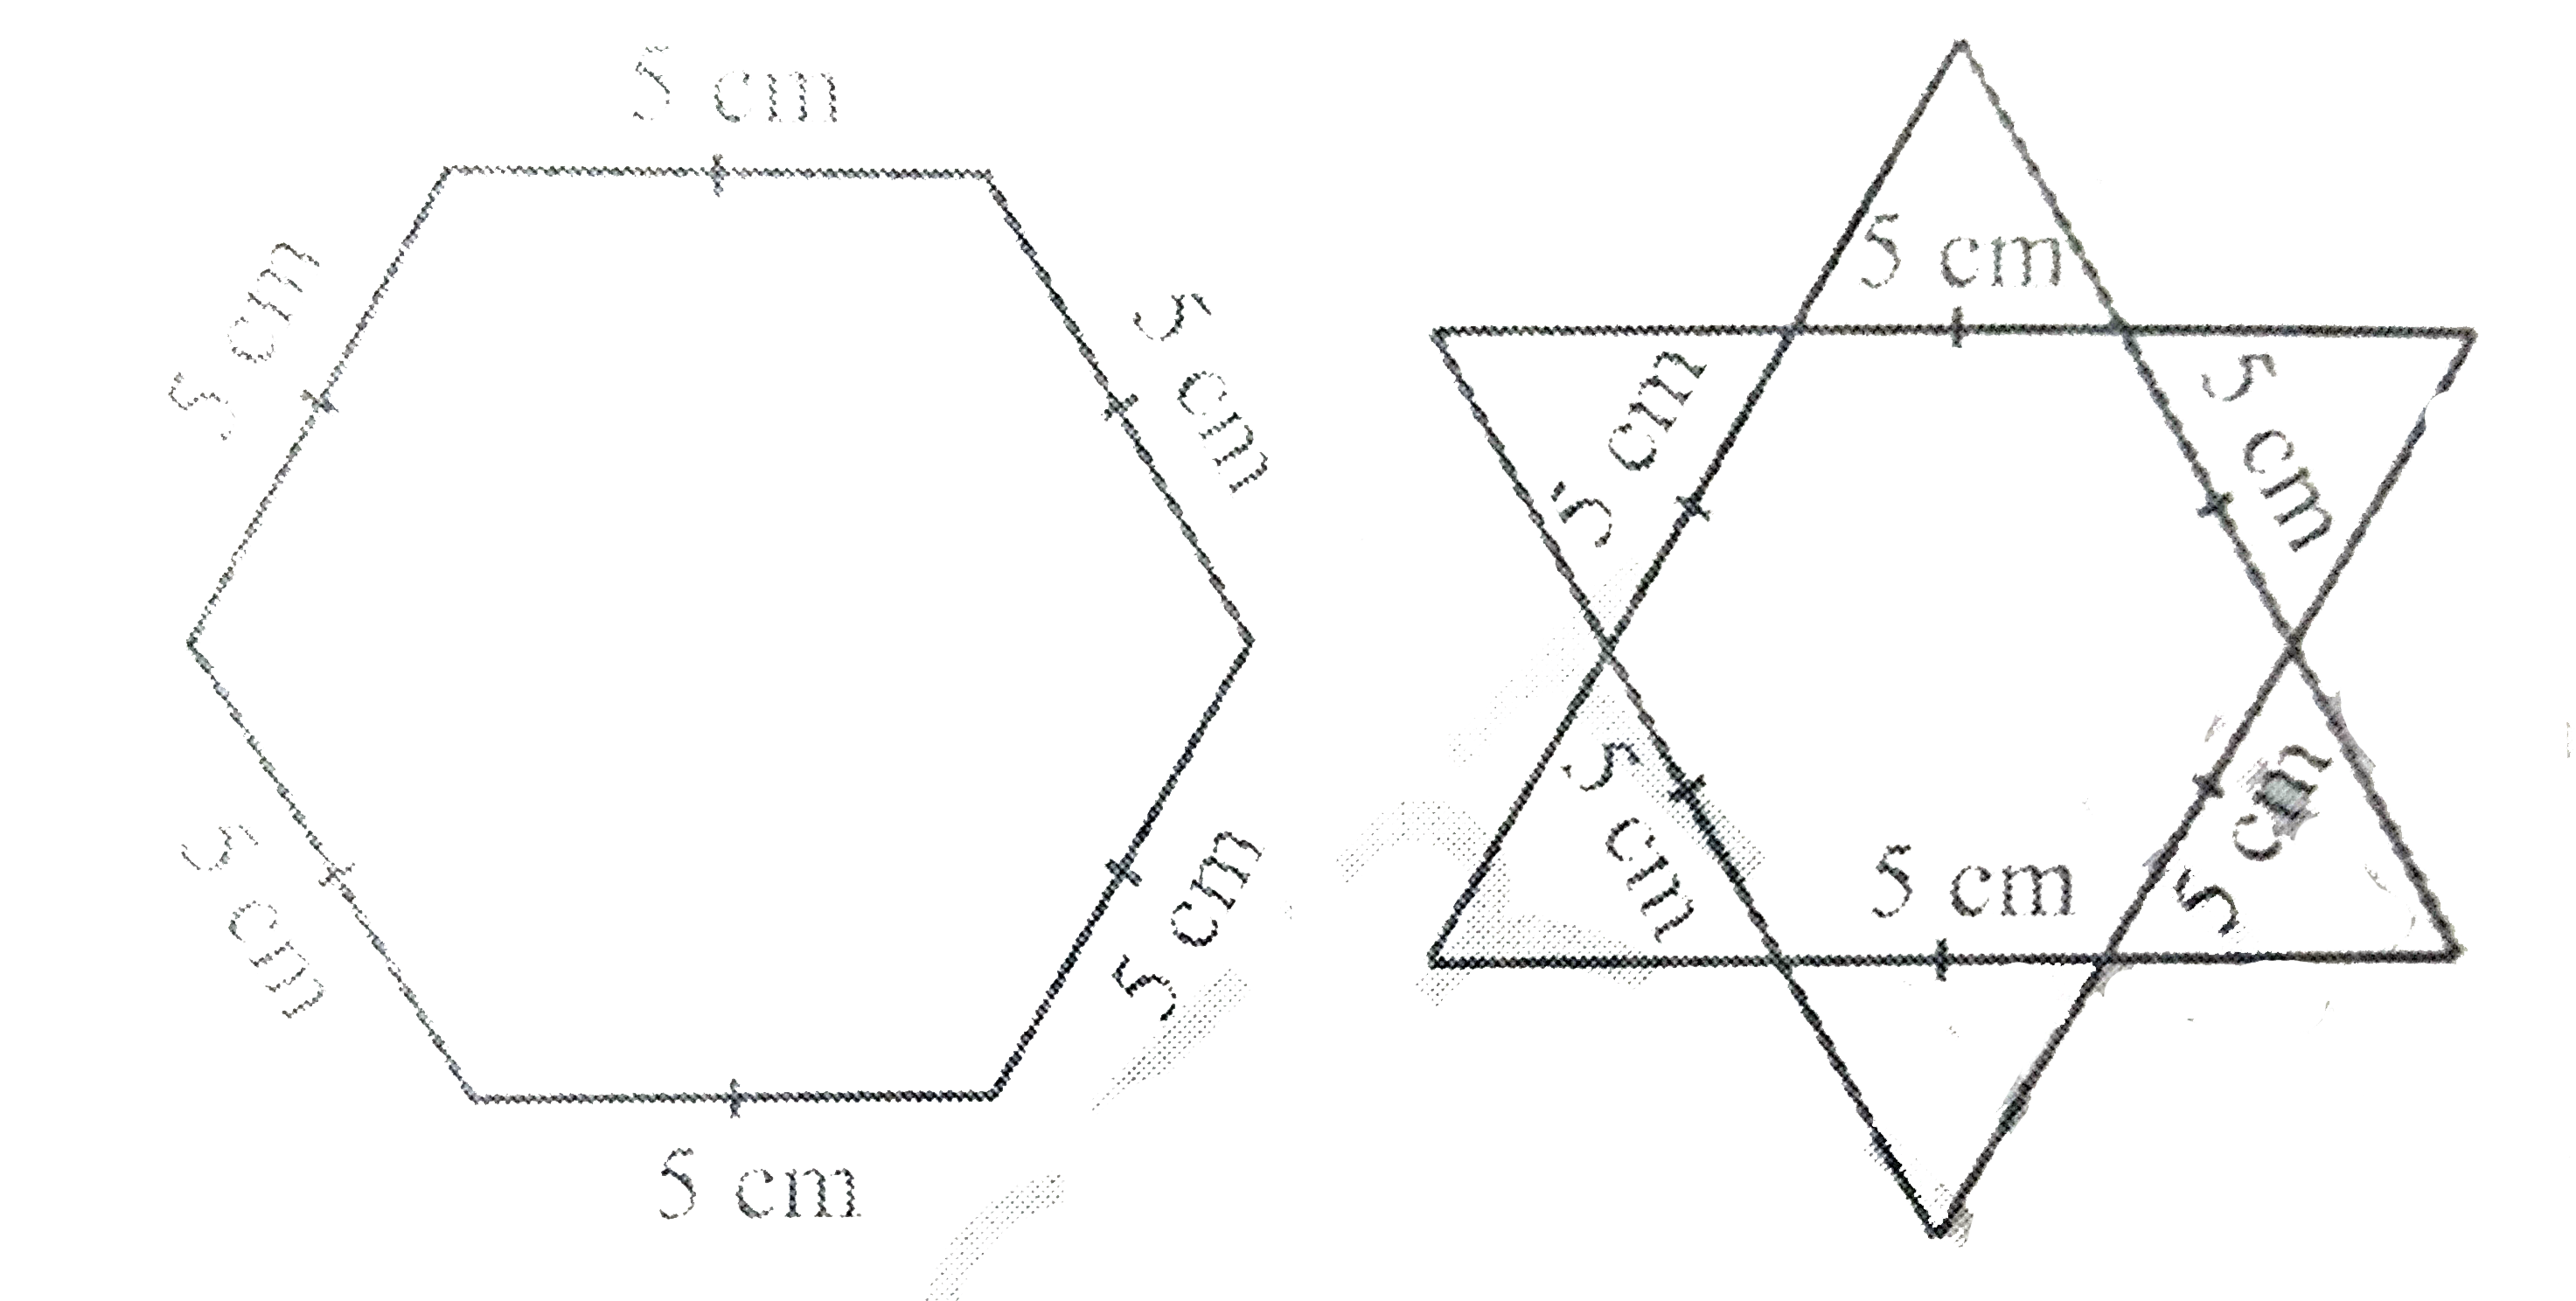 षट्भुज और तारे के आकार की रंगोलियों  को  1 cm भुजा वाले समबाहु त्रिभुजों से भर कर पूरा कीजिए।  प्रत्येक स्थिति में, त्रिभुजों के संख्या गिनिए। किसमें अधिक त्रिभुज हैं?